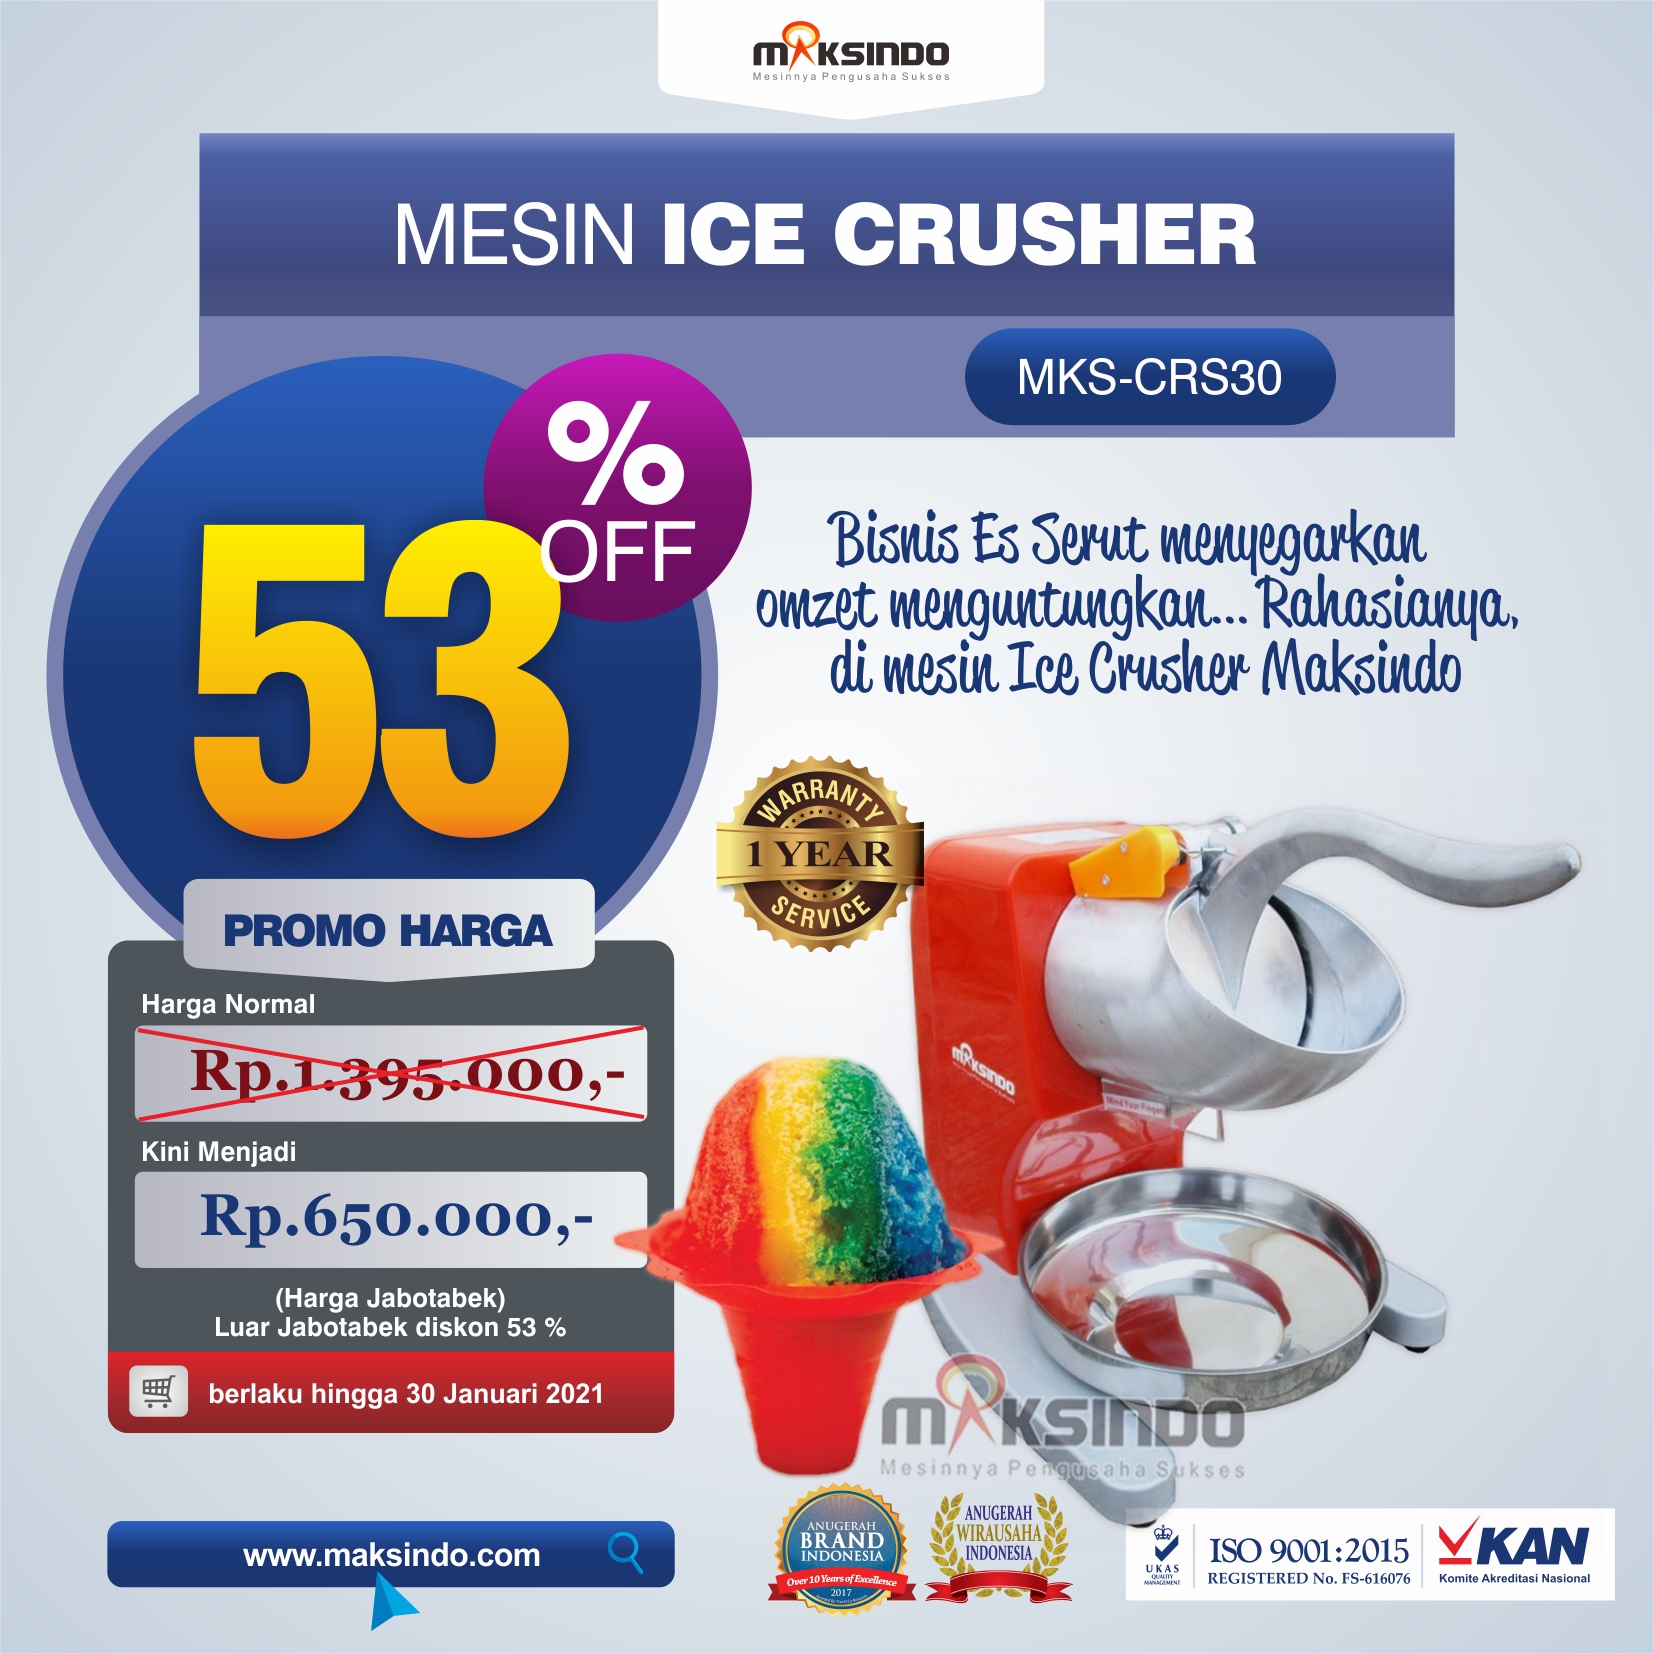 Jual Mesin Ice Crusher MKS-CRS30 di Yogyakarta